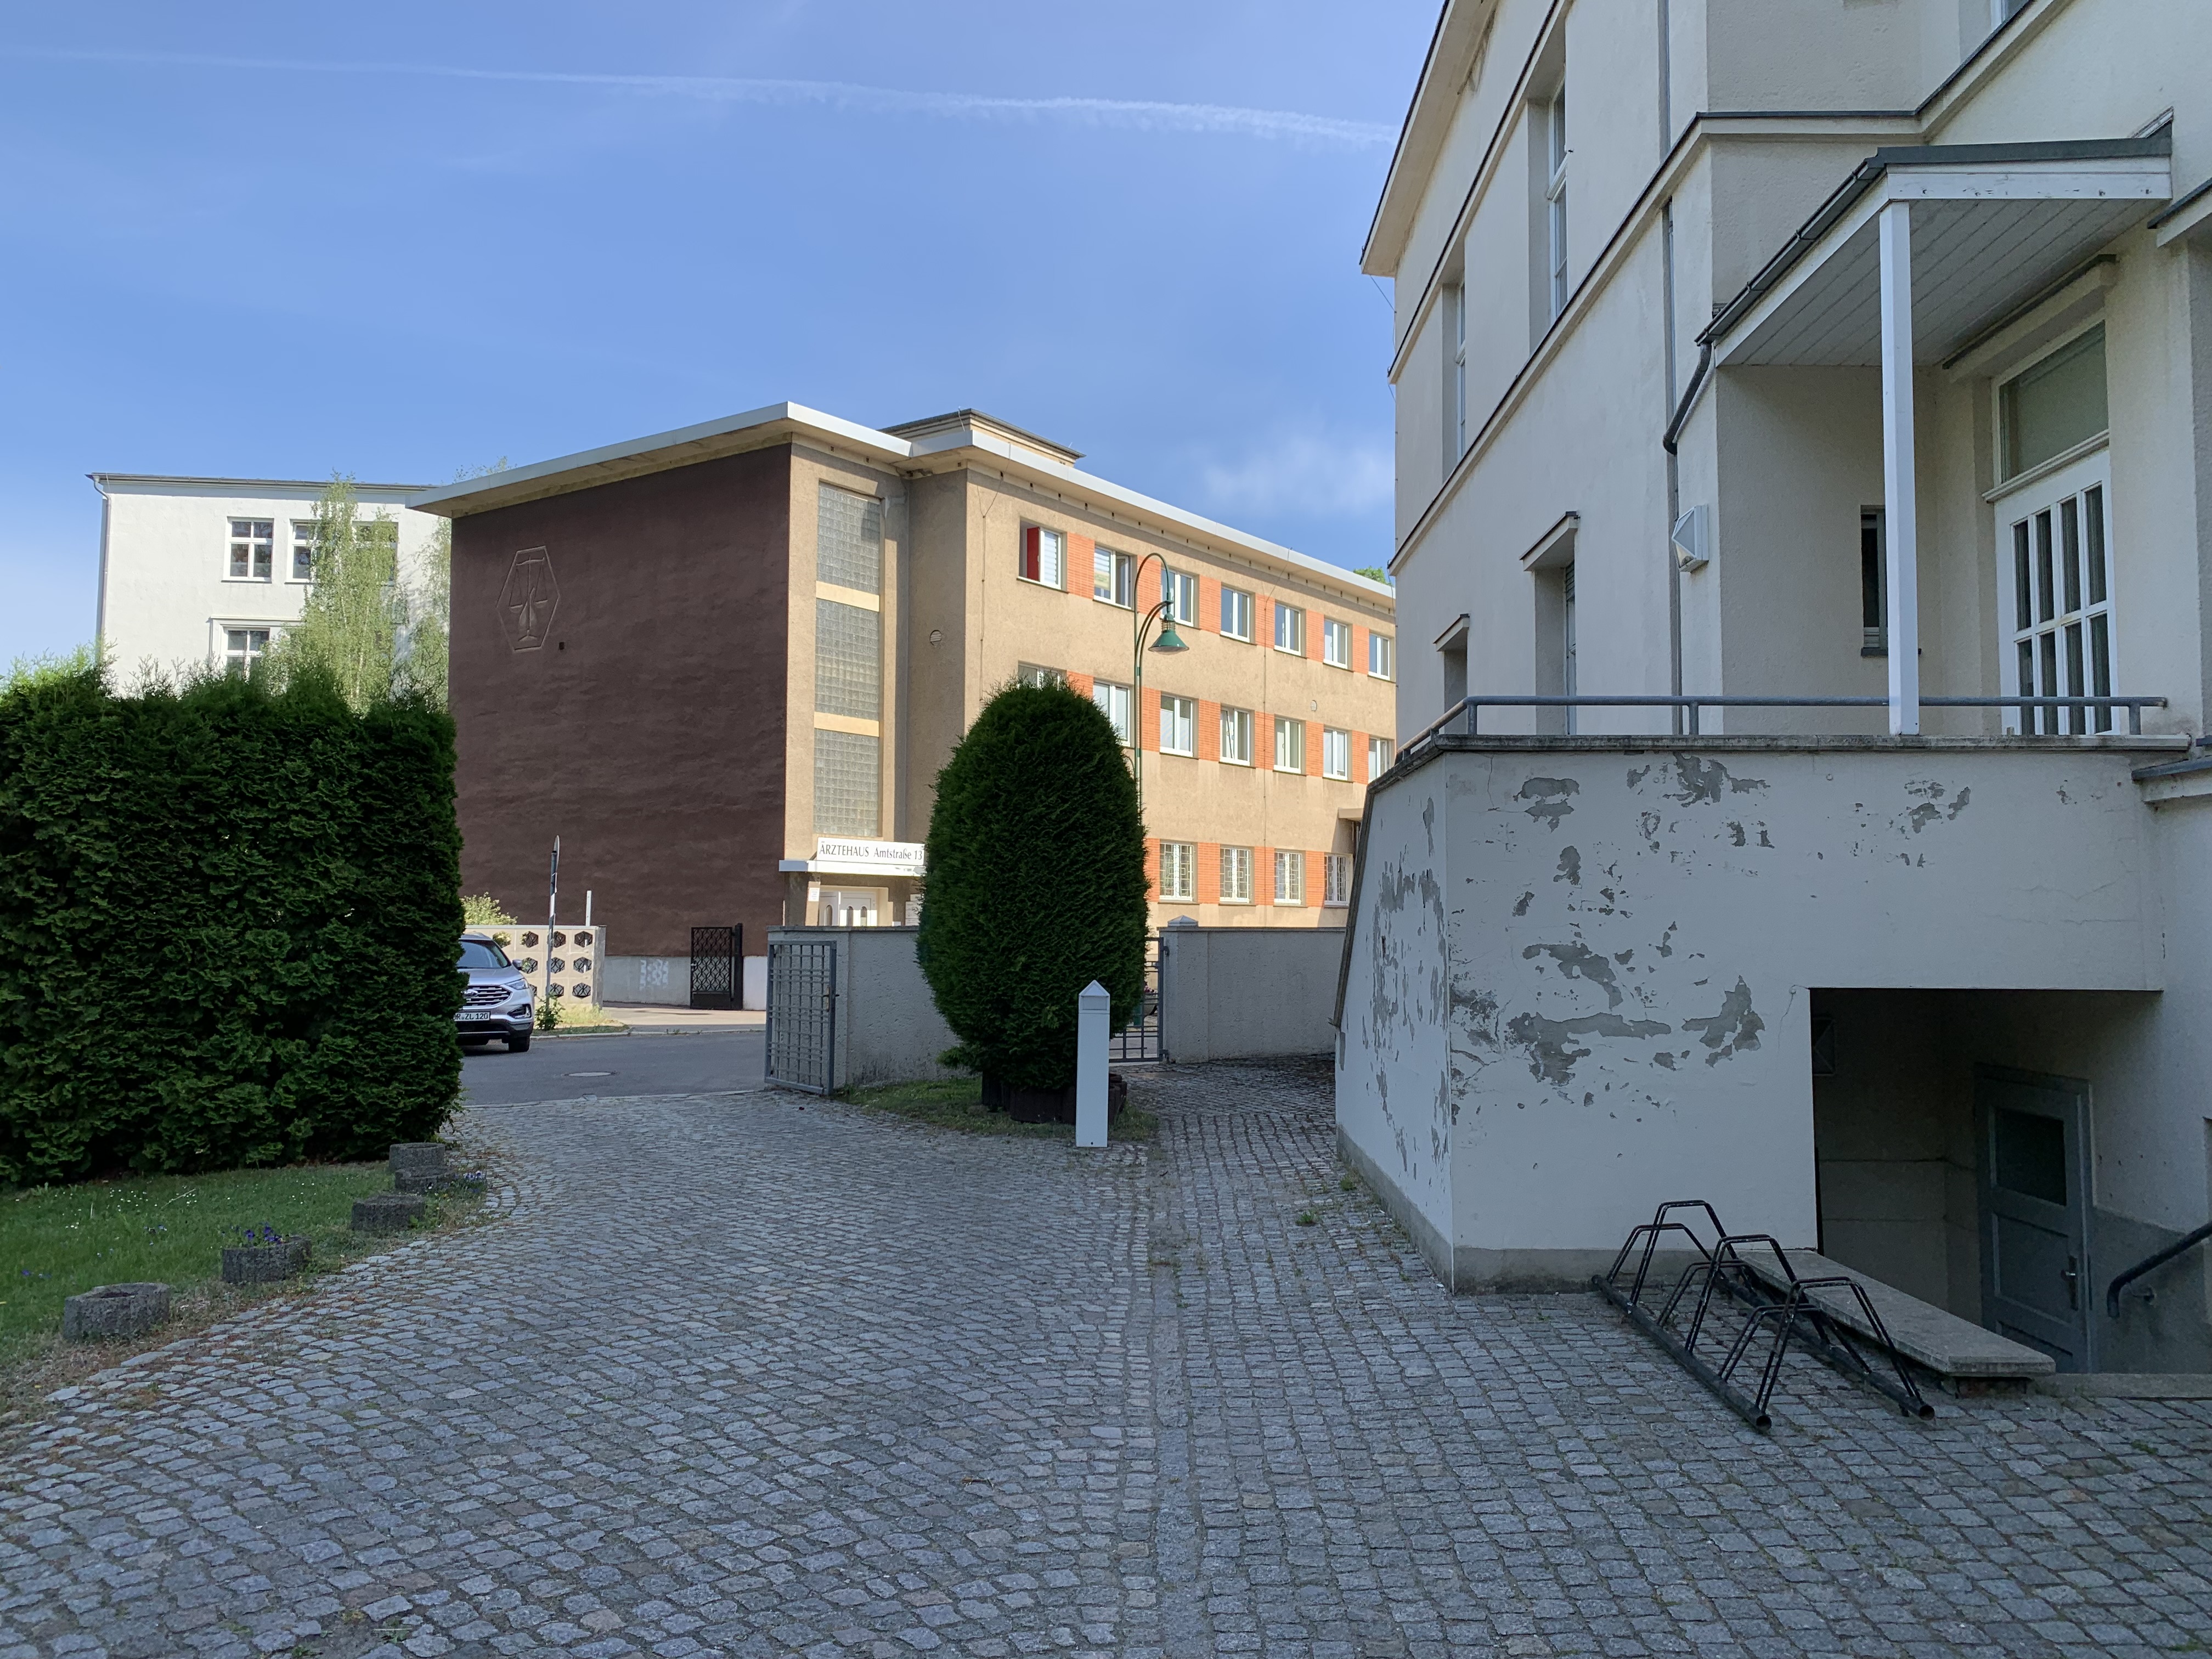 Das Bild zeigt zwei Gebäude von außen. Unten rechtes im Bild sind Fahrradständer zu sehen. Das Gebäude auf der rechten Seite ist sanierungsbedürftig.